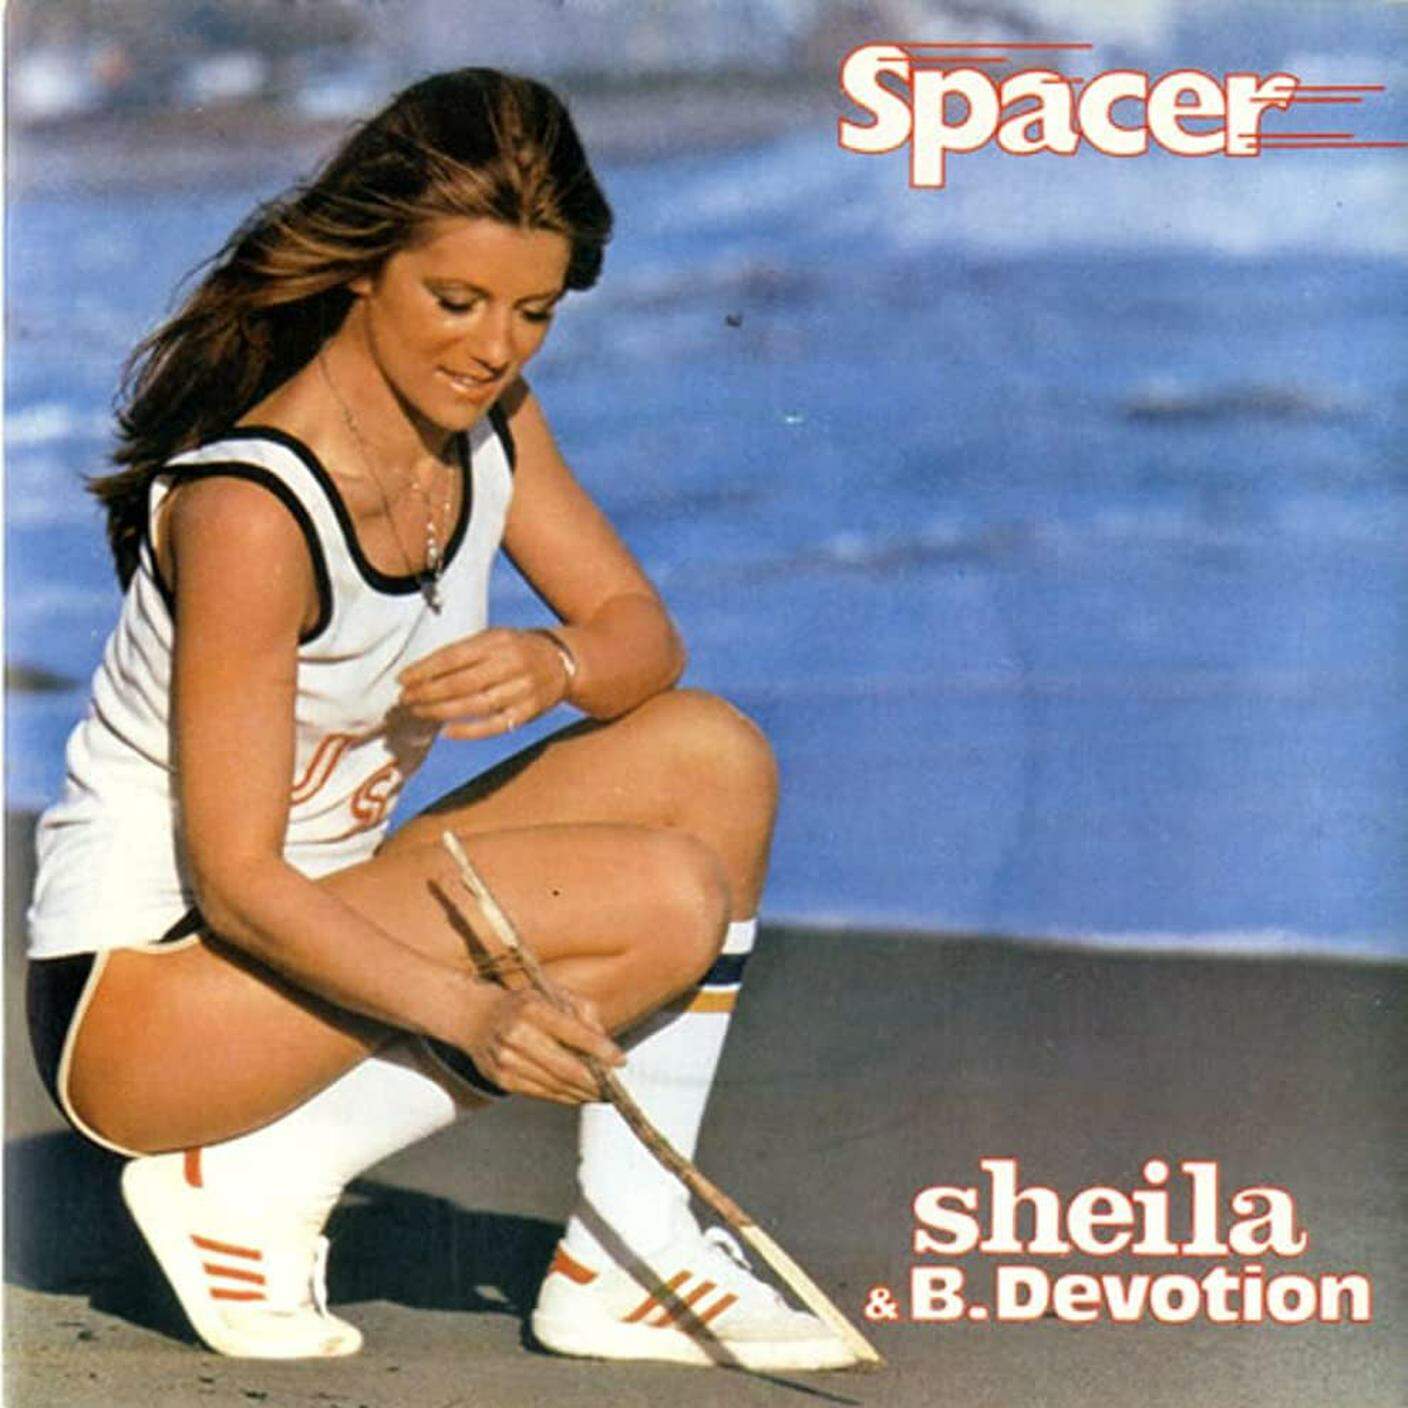 Spacer di Sheila & B Devotion, Carrere Records (dettaglio di copertina)